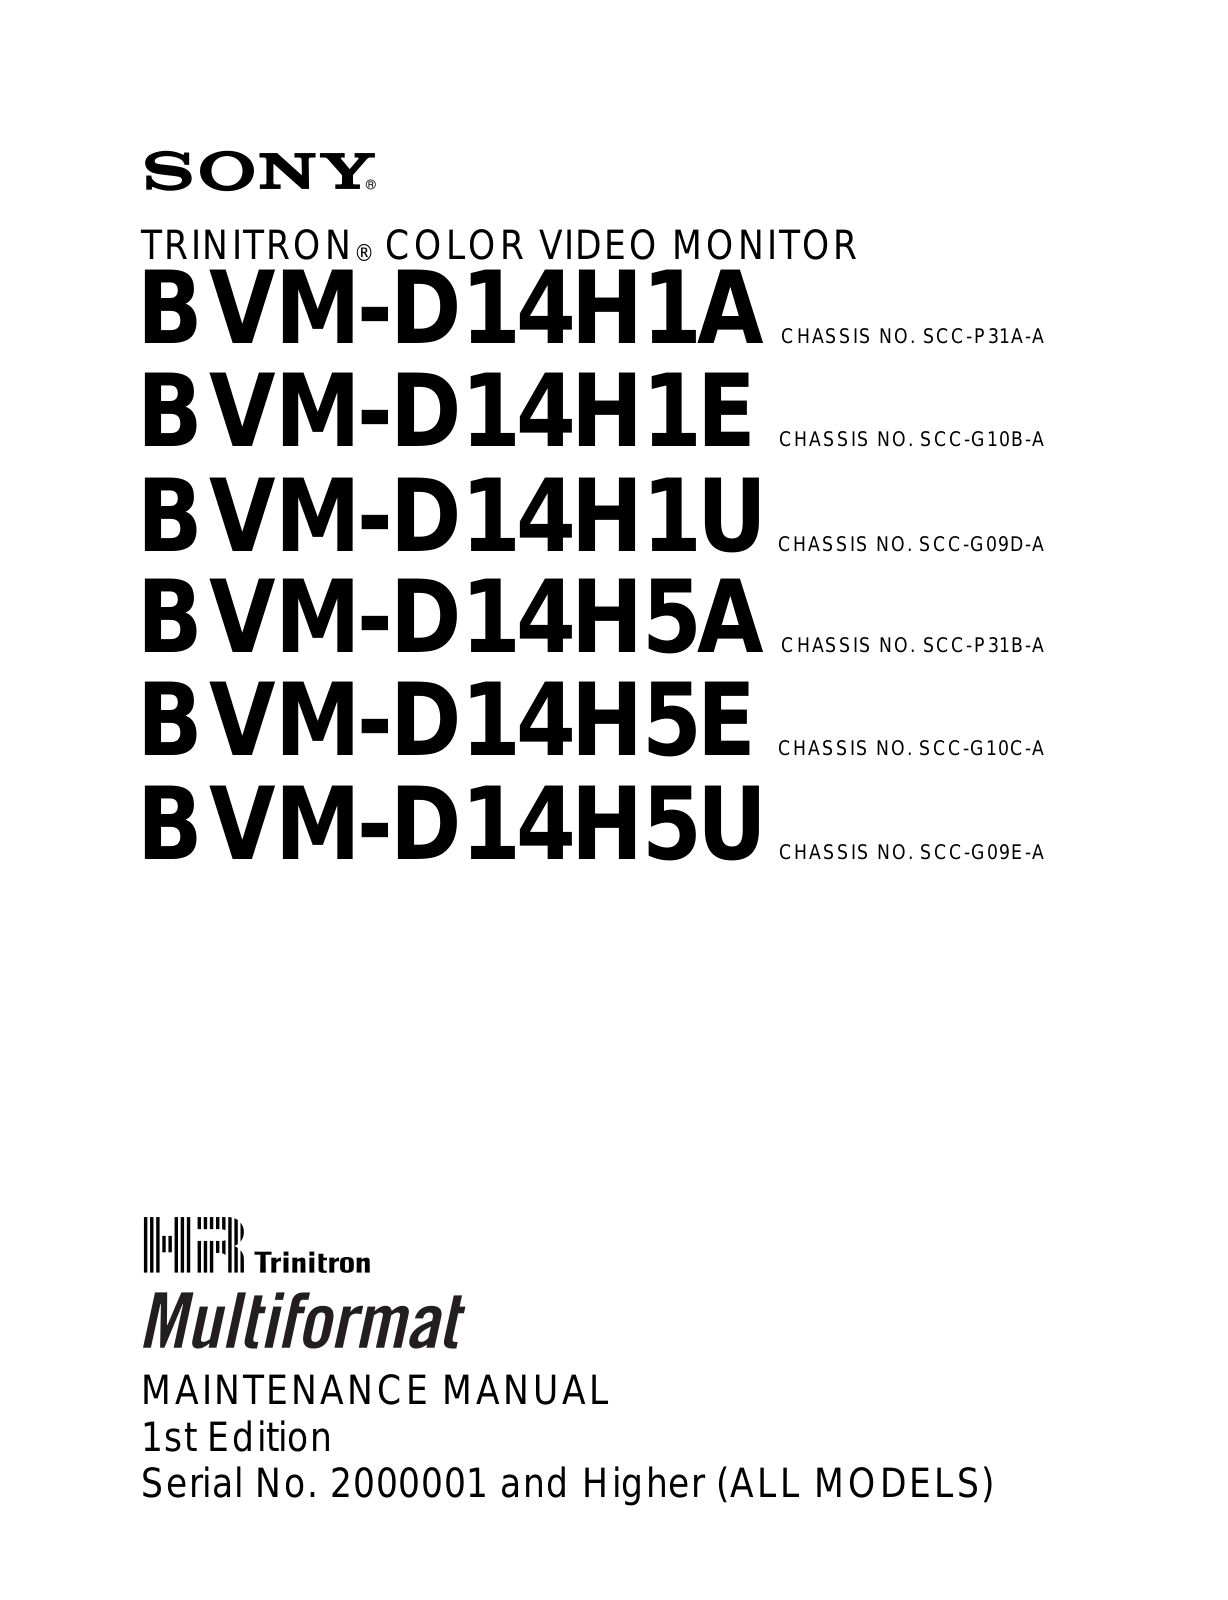 Sony BVM-D14H, BVM-D14H5 Maintenance Manual